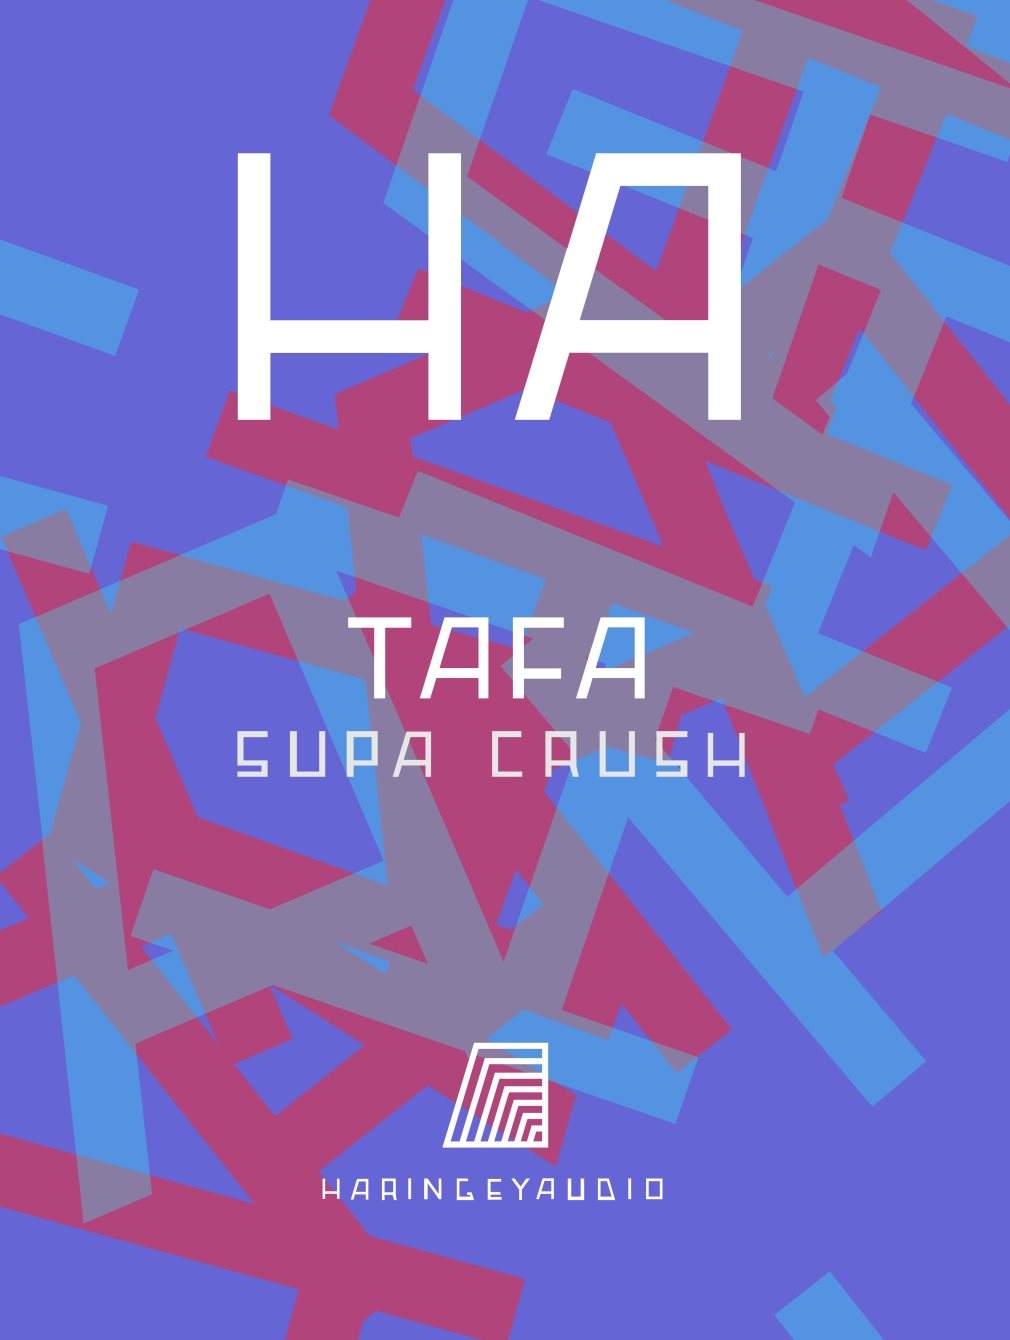 Haringey Audio: Tafa & Supa Crush - フライヤー表